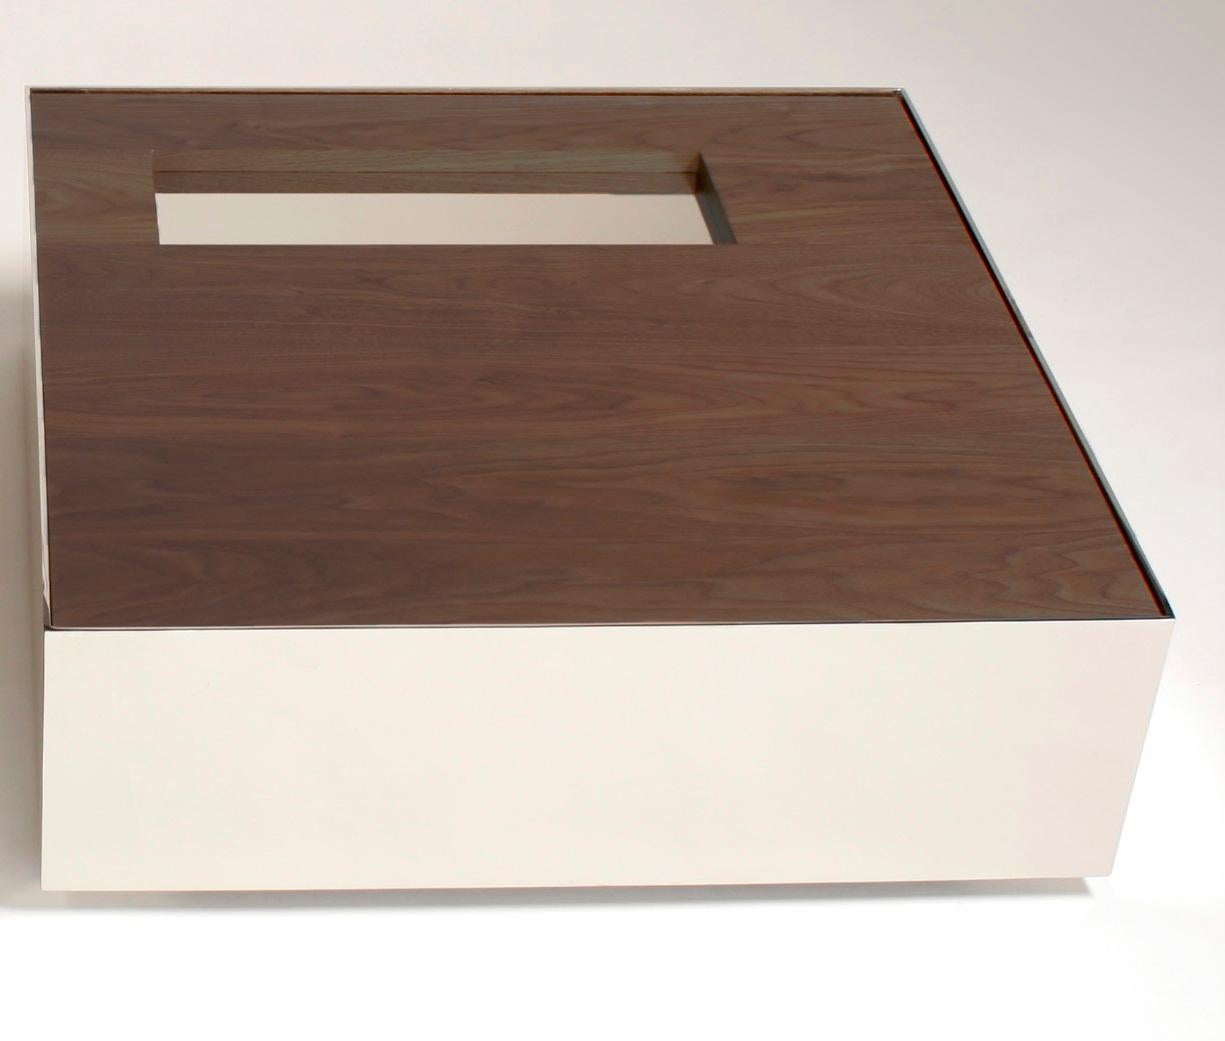 Table basse Ballot de Phase Design
Dimensions : P 76,2 x L 76,2 x H 25,4 cm.
MATERIAL : Noyer et métal peint par poudrage en blanc.

Table basse en acier avec plateau en bois massif, disponible en noyer, chêne blanc ou chêne ébonisé. Disponible en